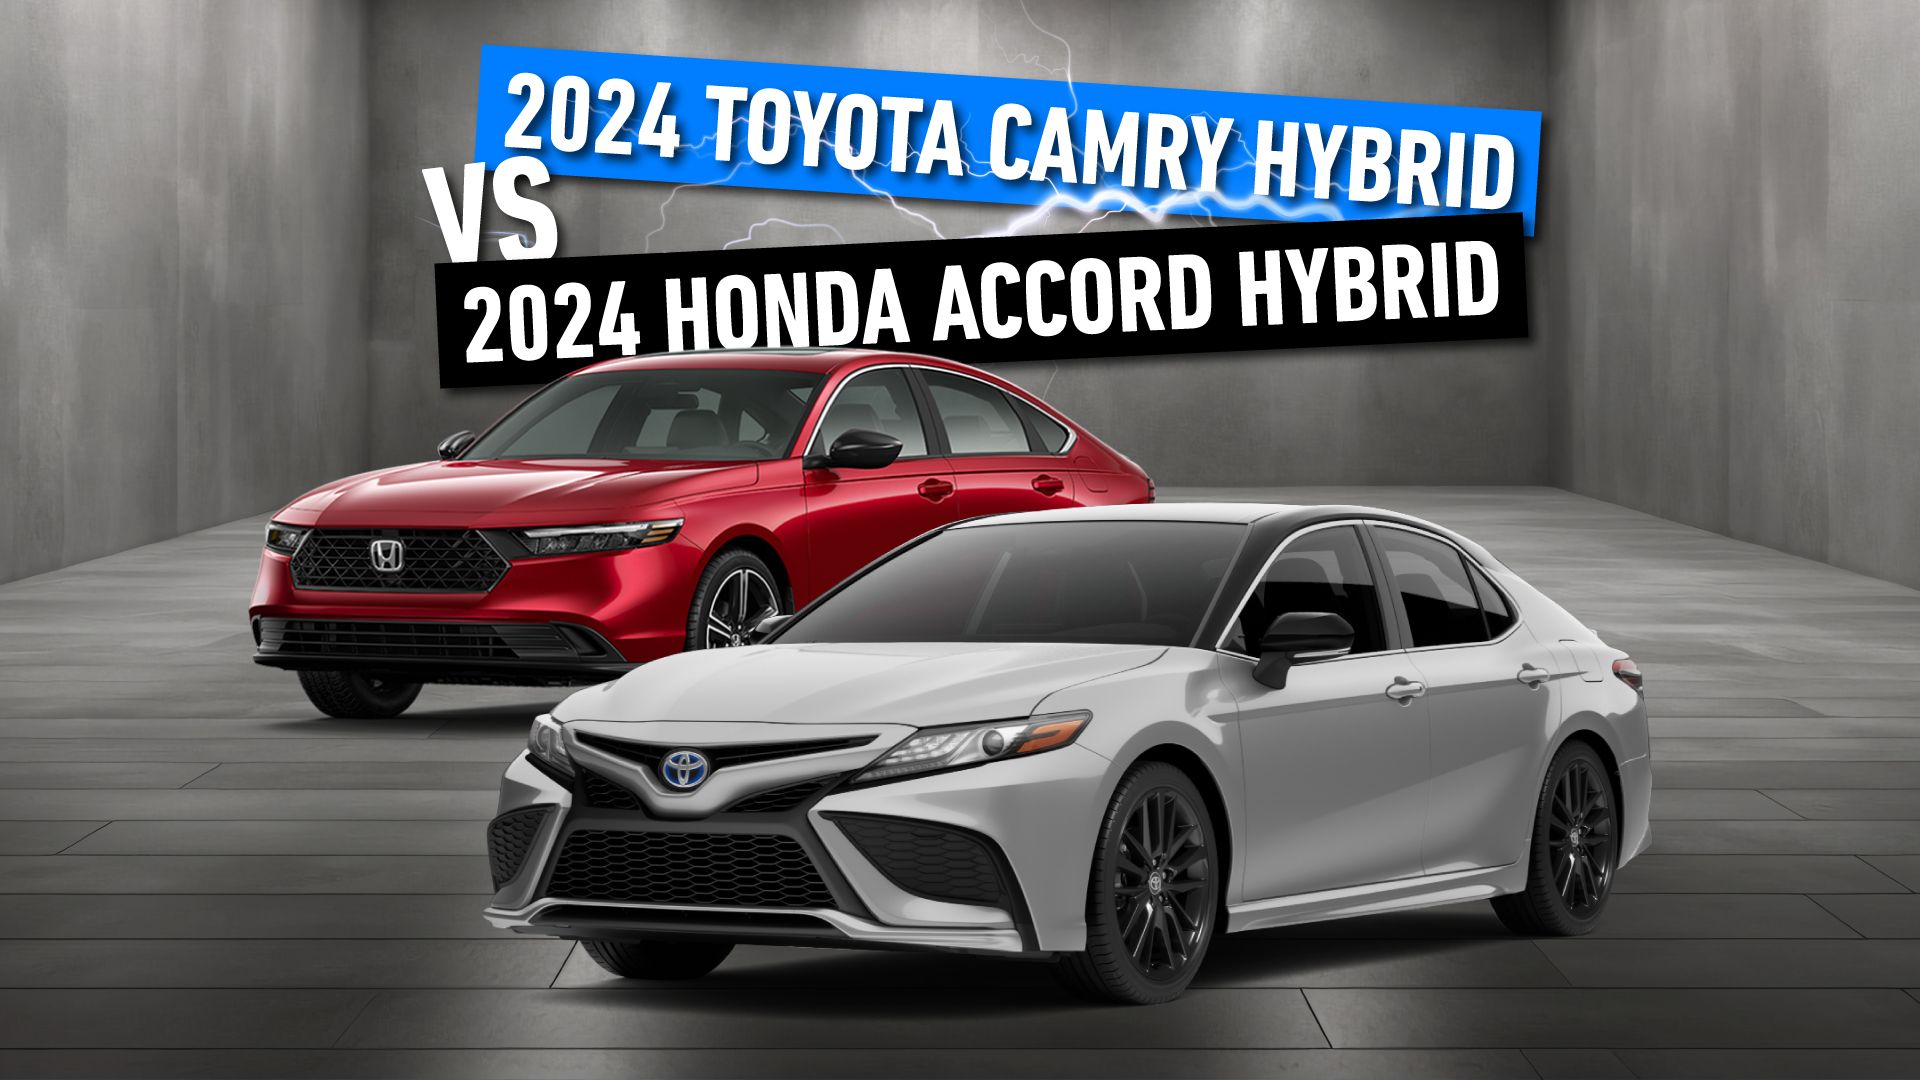 2024 Toyota Camry Hybrid Vs 2024 Honda Accord Hybrid custom image